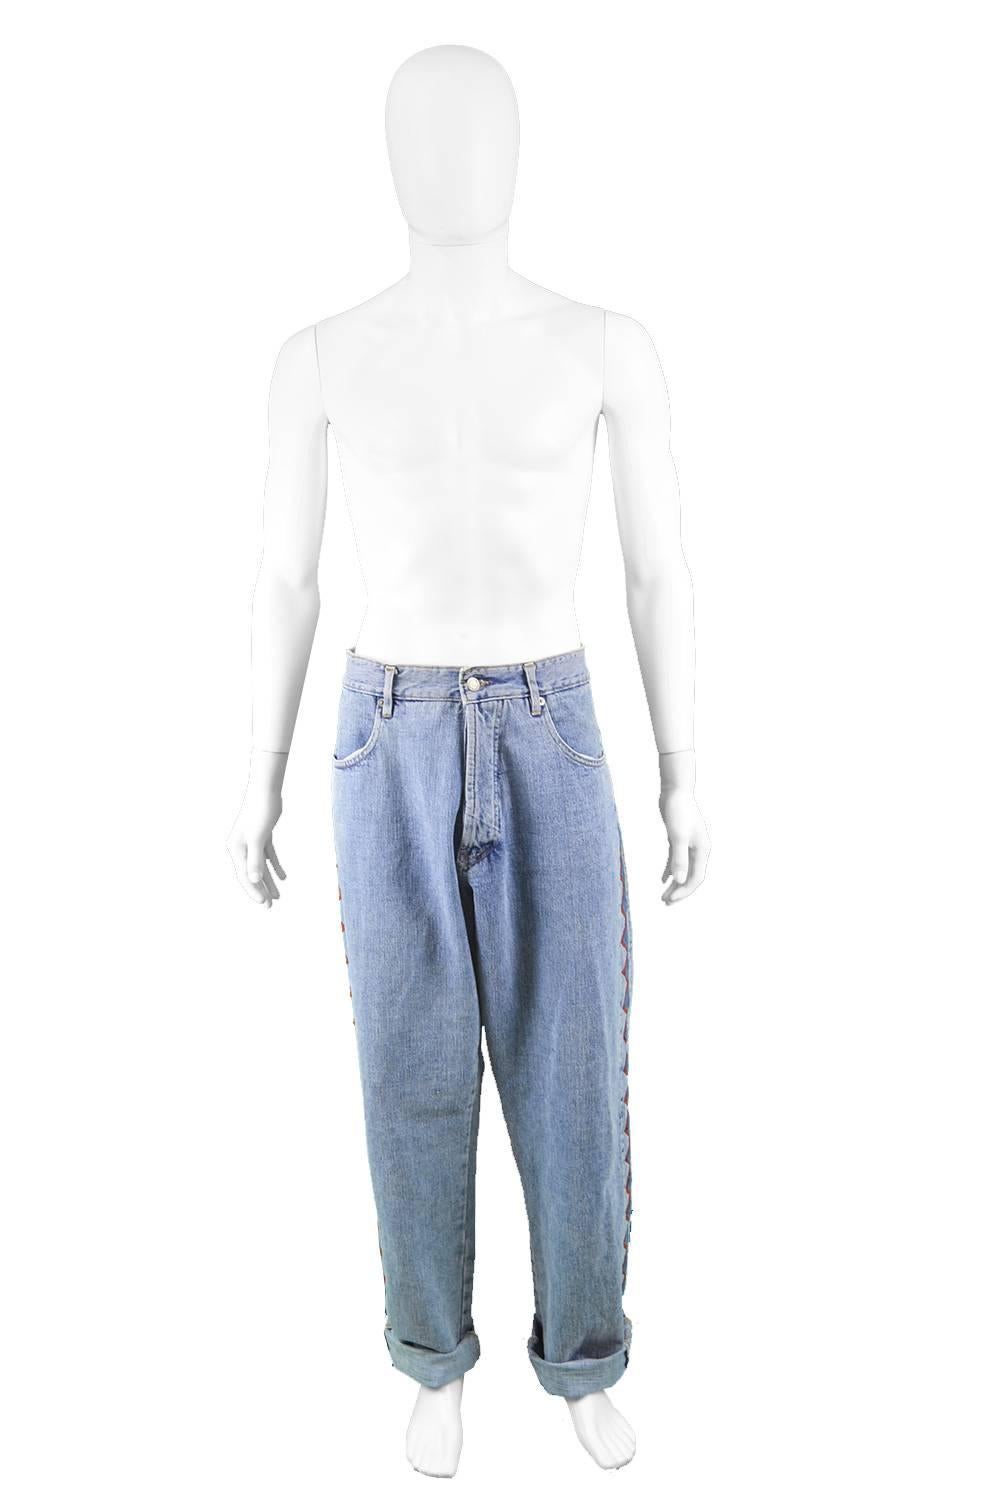 Jean Charles de Castelbajac Men's Vintage 1980s Baggy Blue Denim & Suede Jeans

Size: Waist - 35” / 89cm
Inside Leg  - 32” / 81cm 
Hips - 48” / 122cm
Length (Shoulder to Hem) - 45” / 114cm
Rise - 14” / 35cm

Condition: Excellent Vintage Condition -